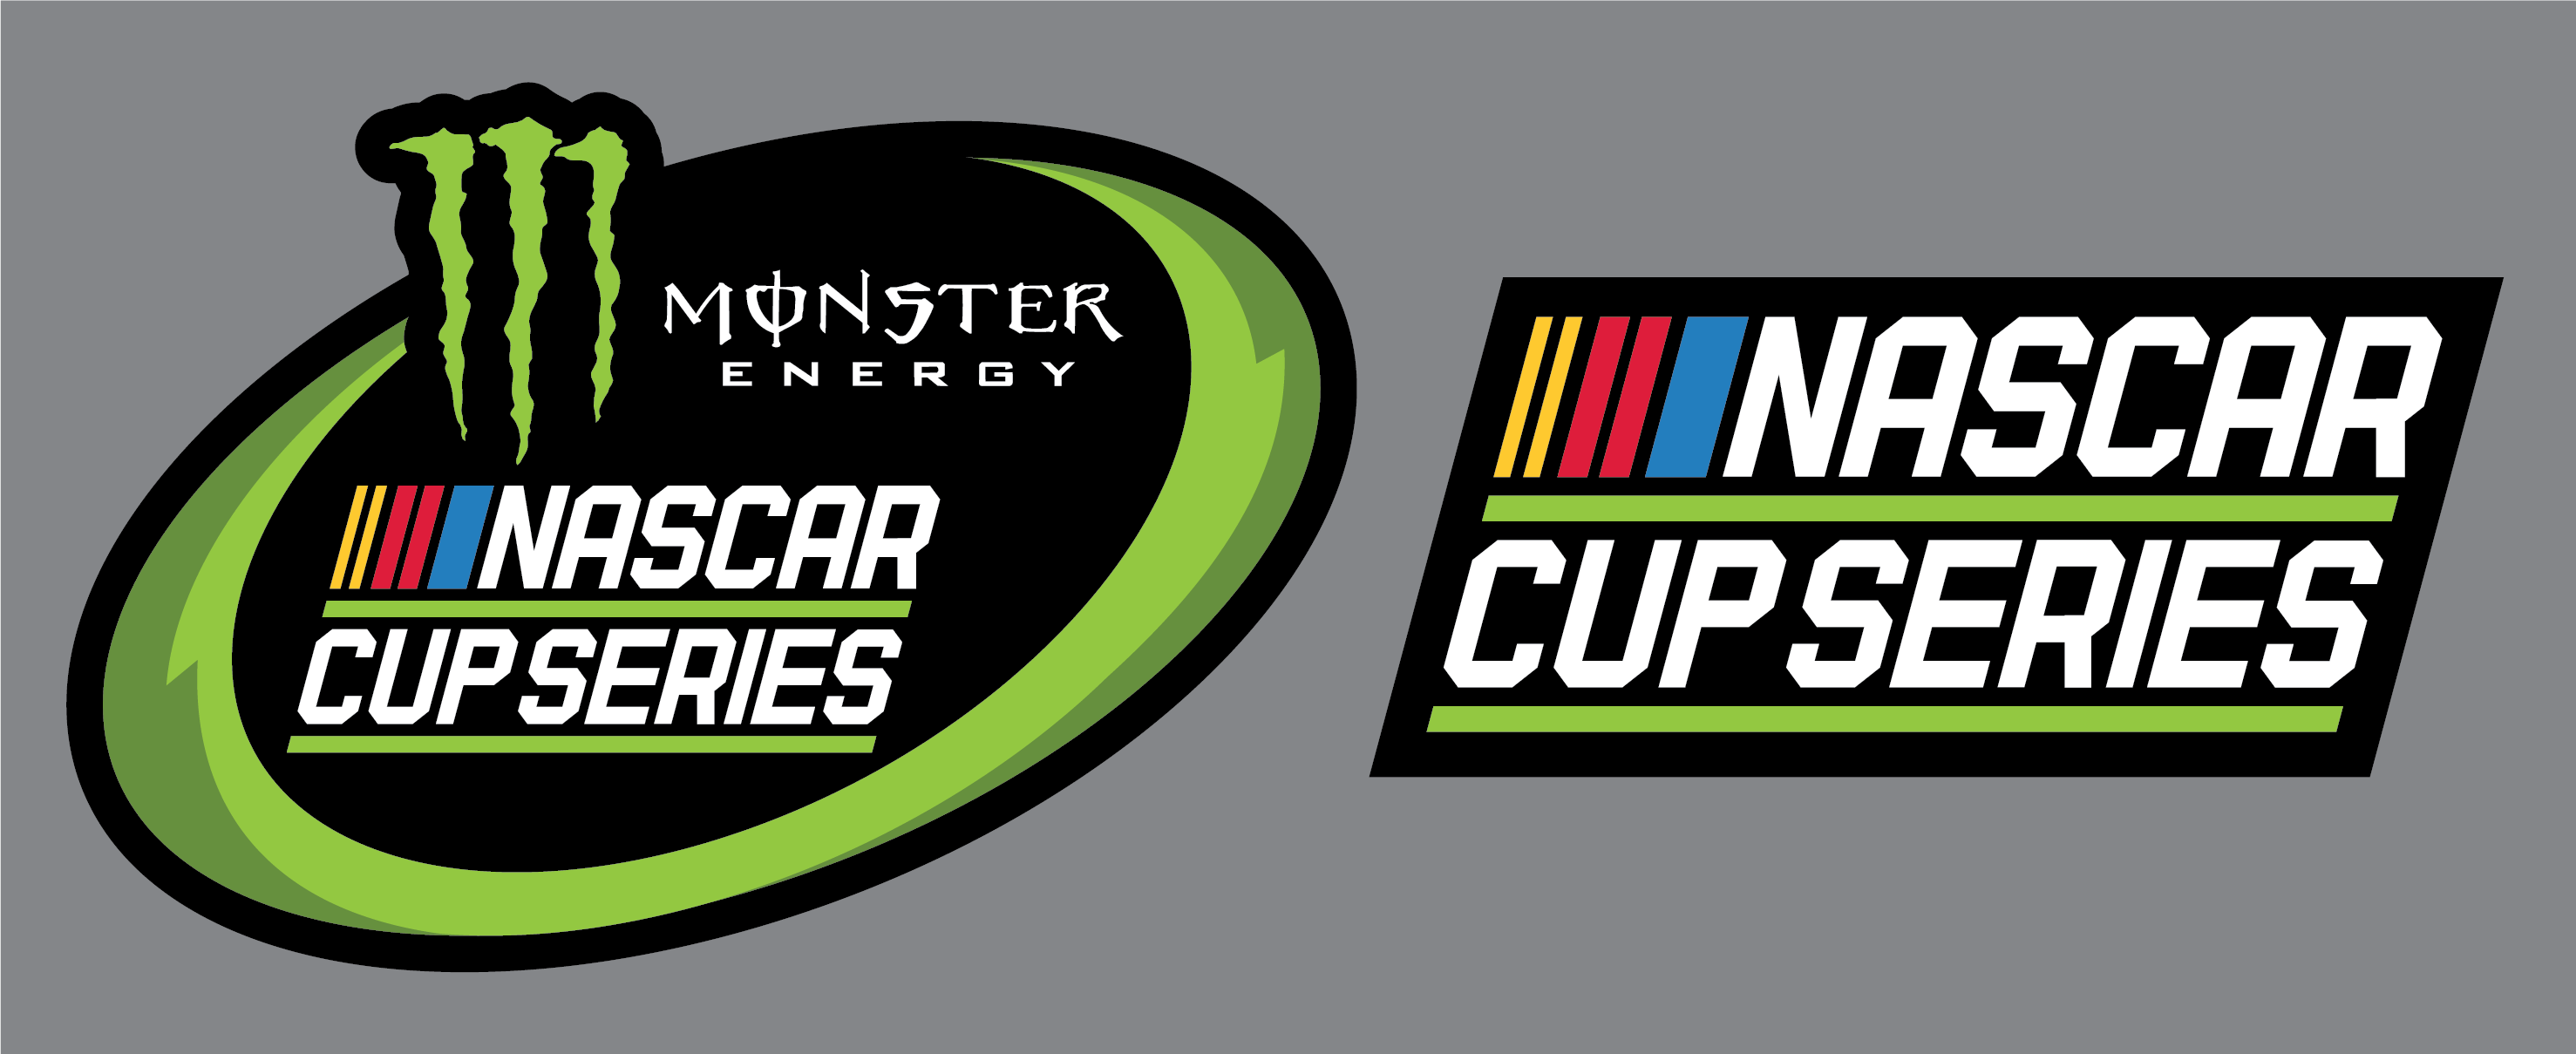 NASCAR On ESPN Logo - New NASCAR and Cup Series logos - Sports Logos - Chris Creamer's ...